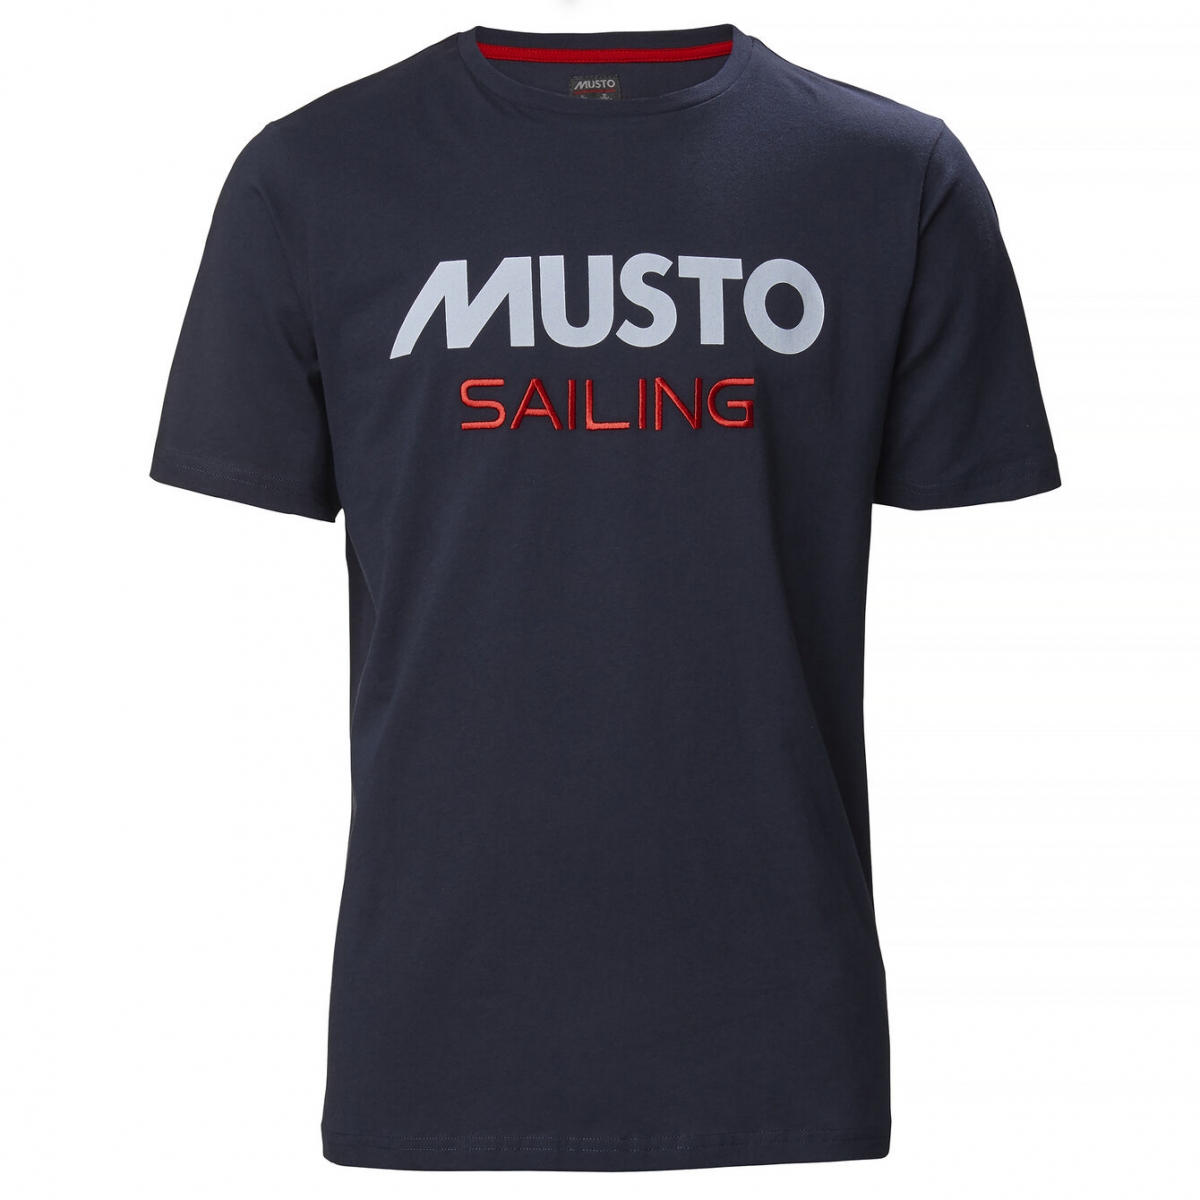 Musto - Musto tee Sailing | shirt